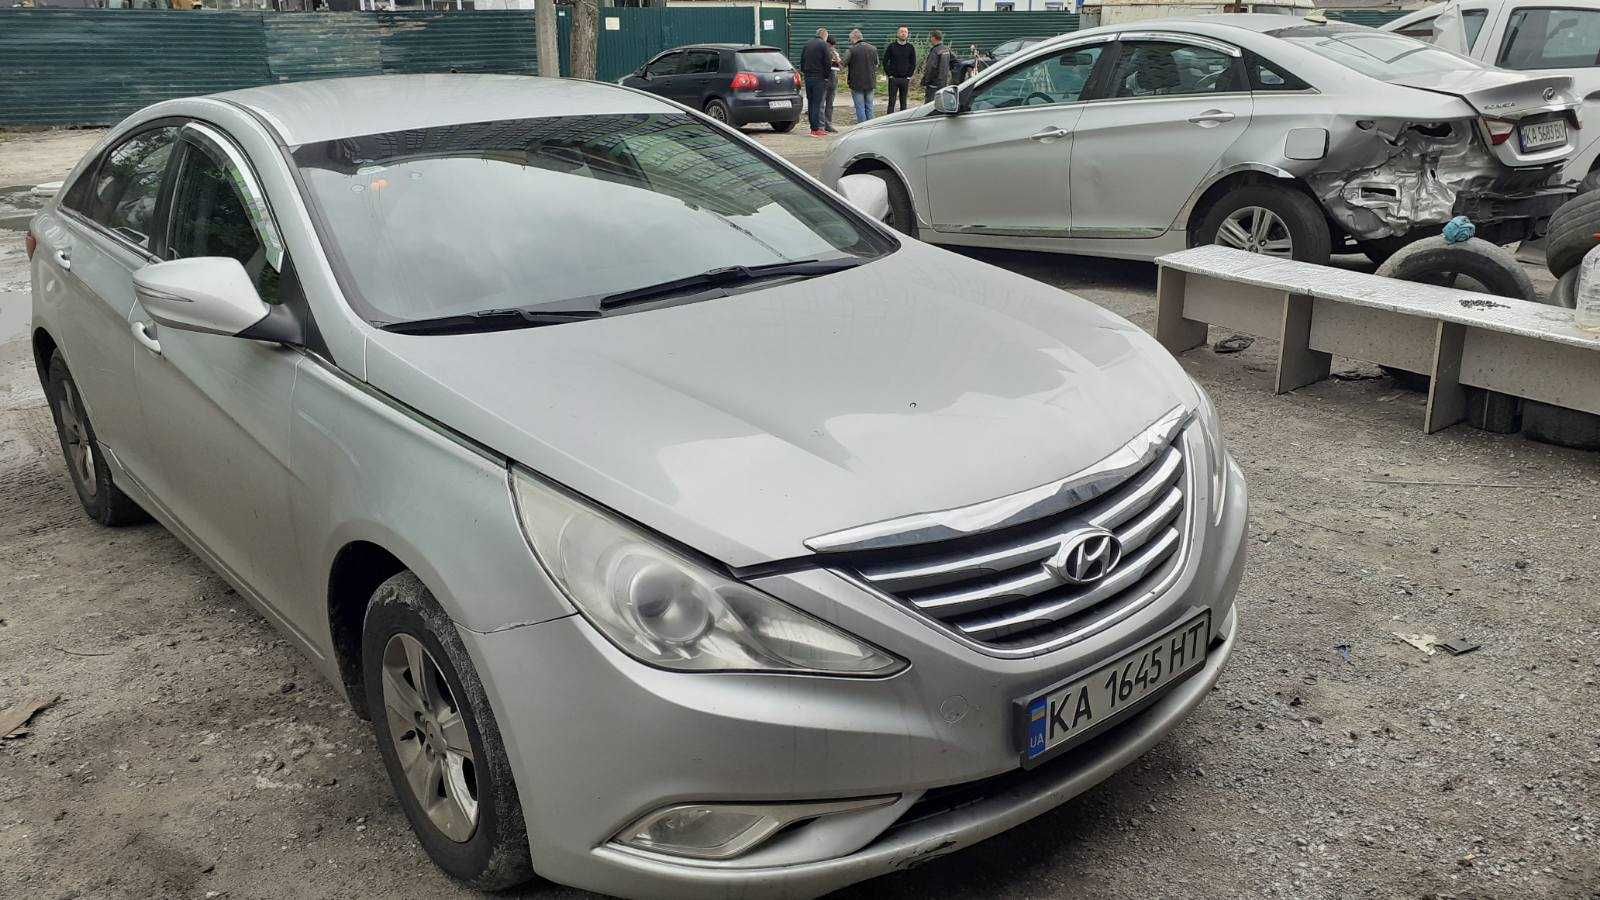 Авто на викуп HYUNDAI SONATA 2014 р.в. Платіж 4000 грн/тижд.